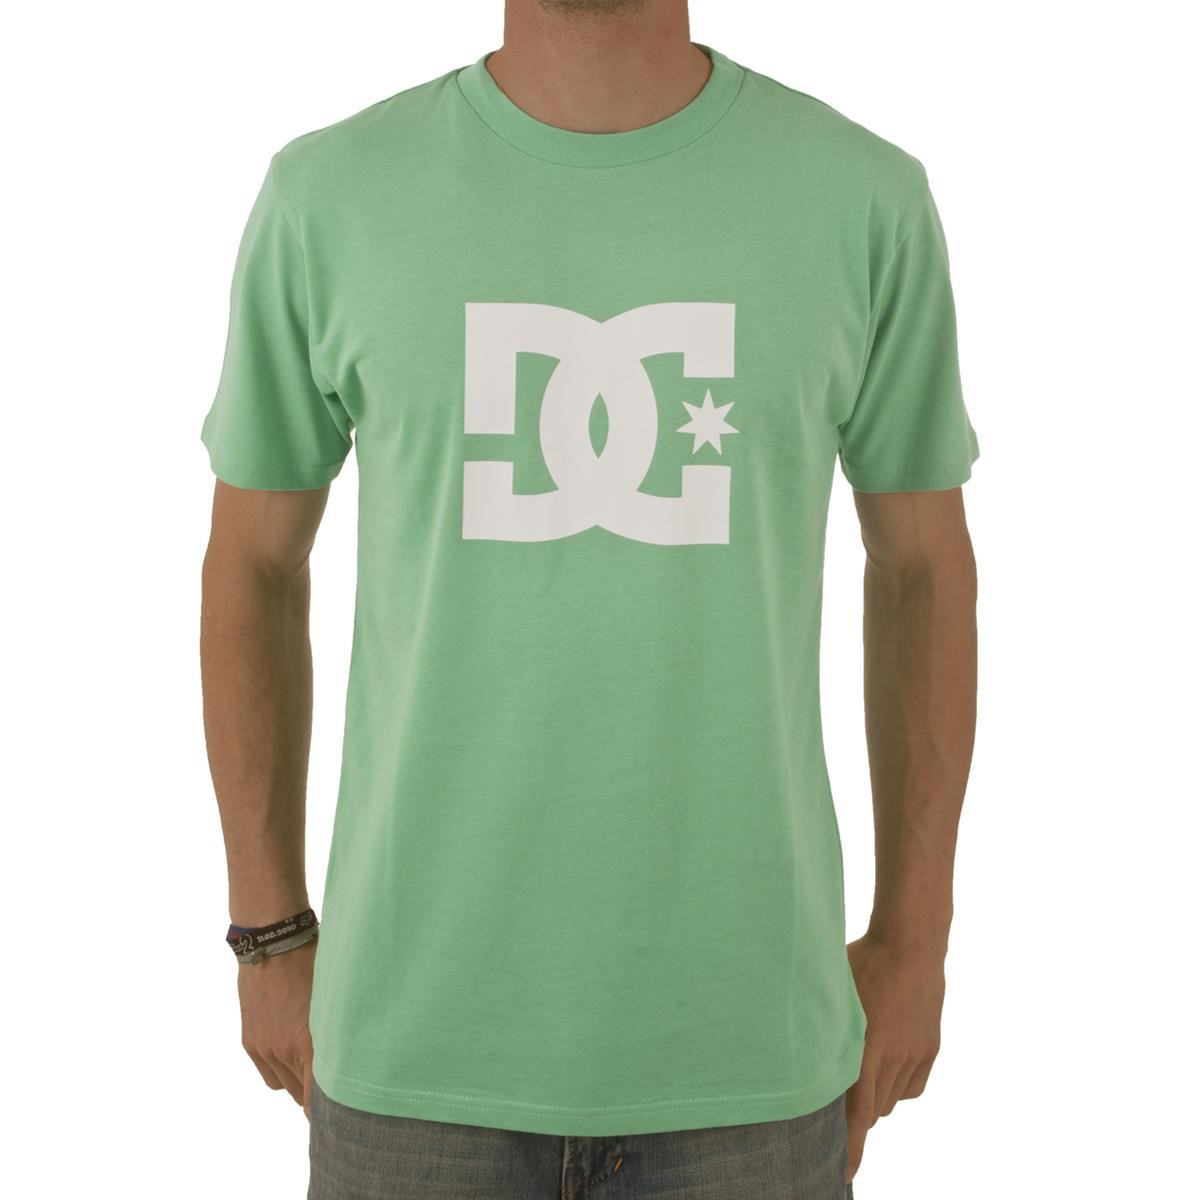 Freizeit/Streetwear Bekleidung-T-Shirts/Polos - DC T-Shirt Star Mint